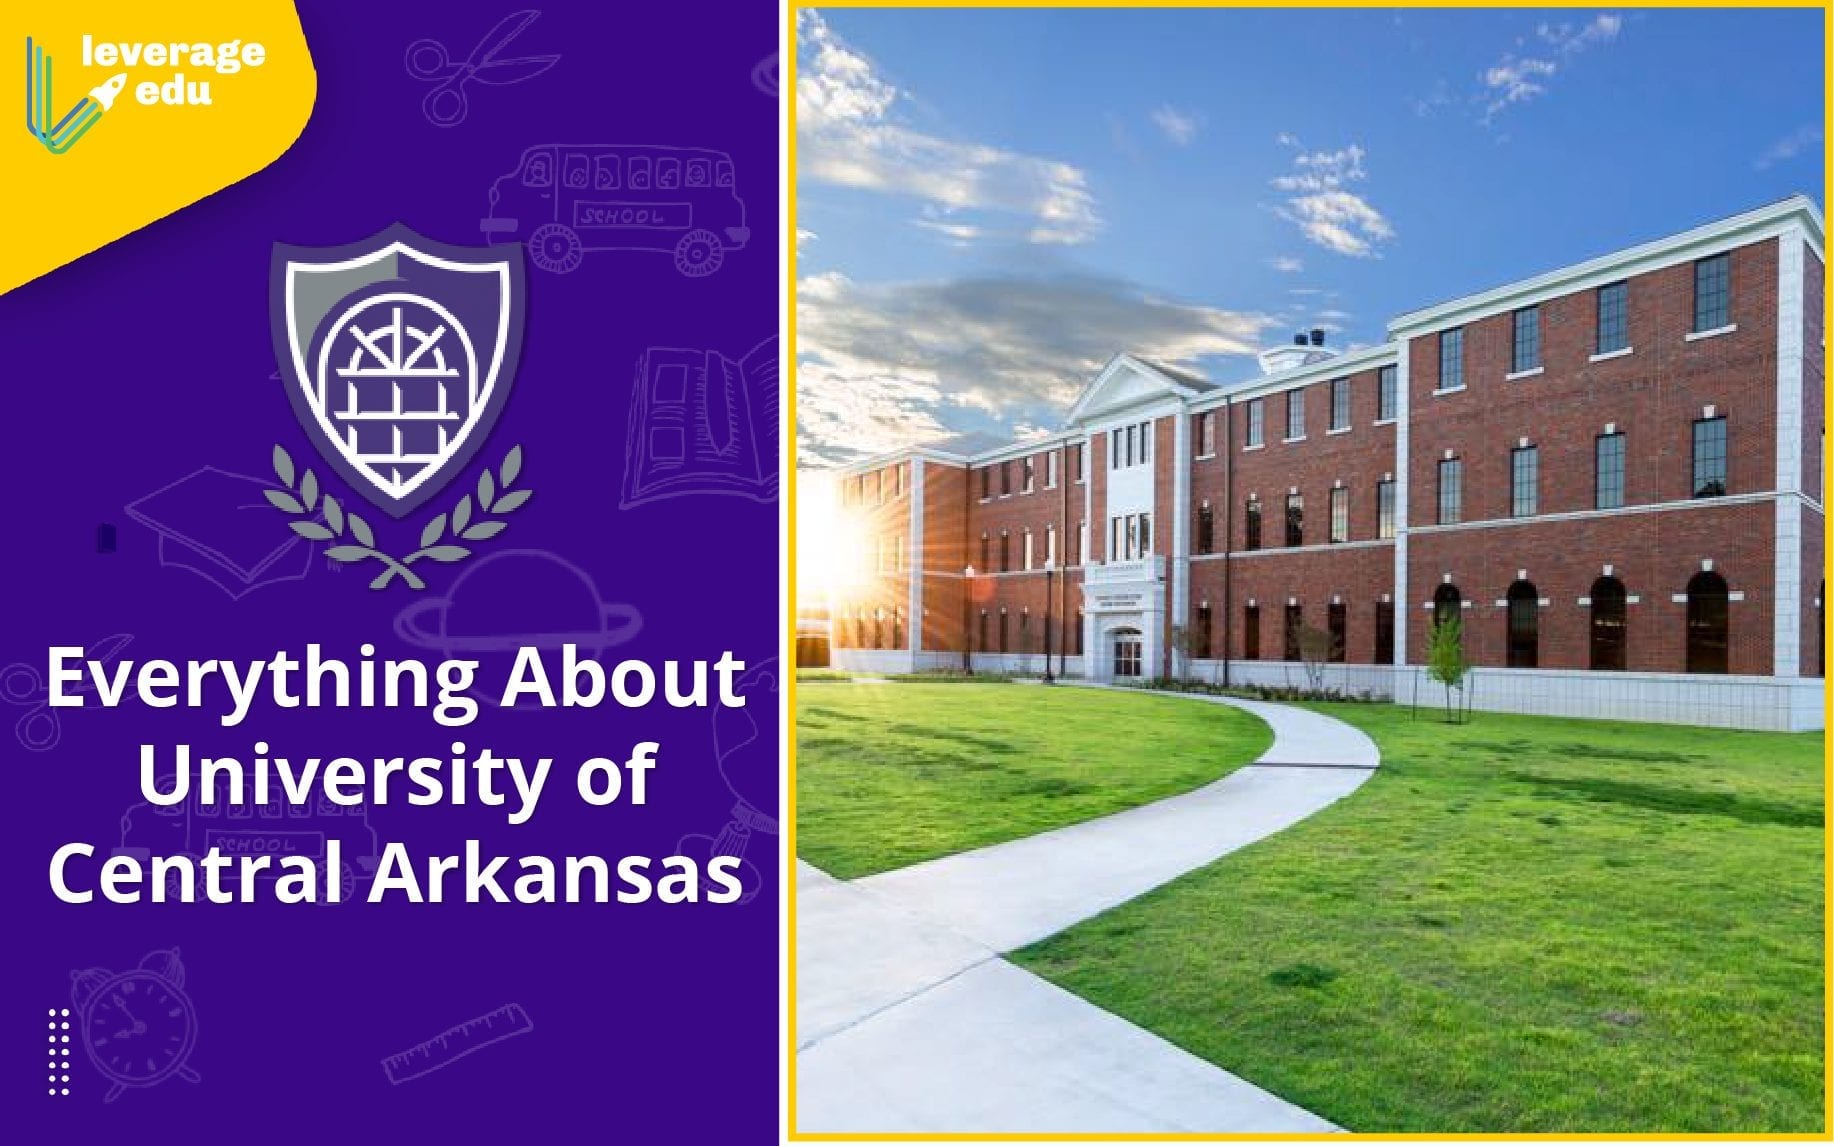 UCA FALLS AT NO. 5 VANDERBILT - University of Central Arkansas